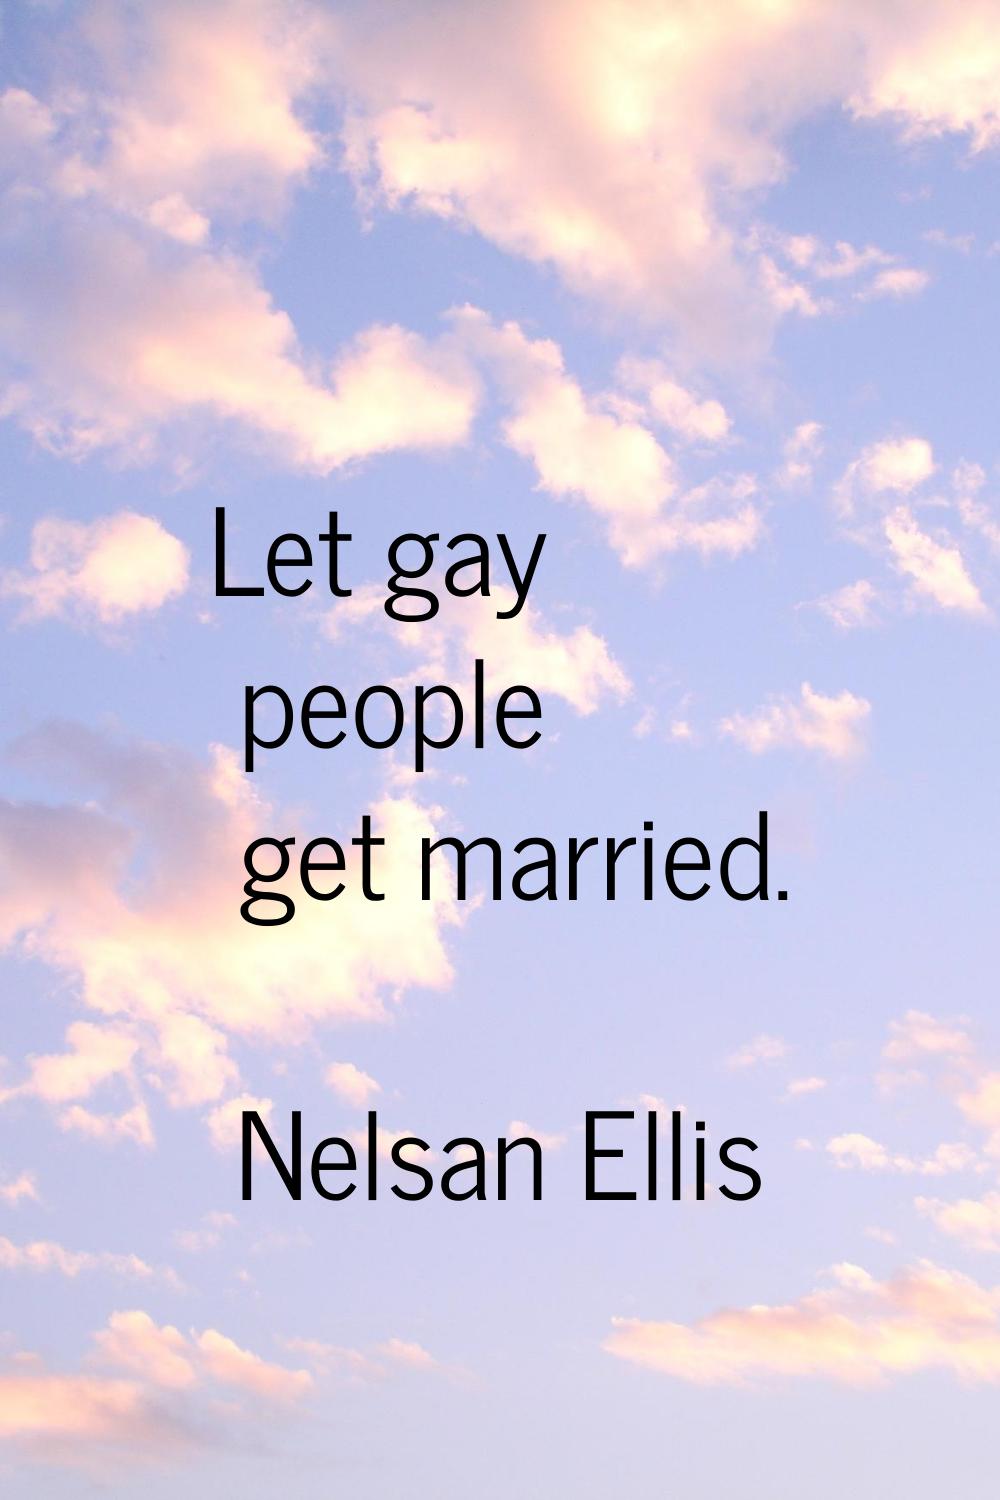 Let gay people get married.